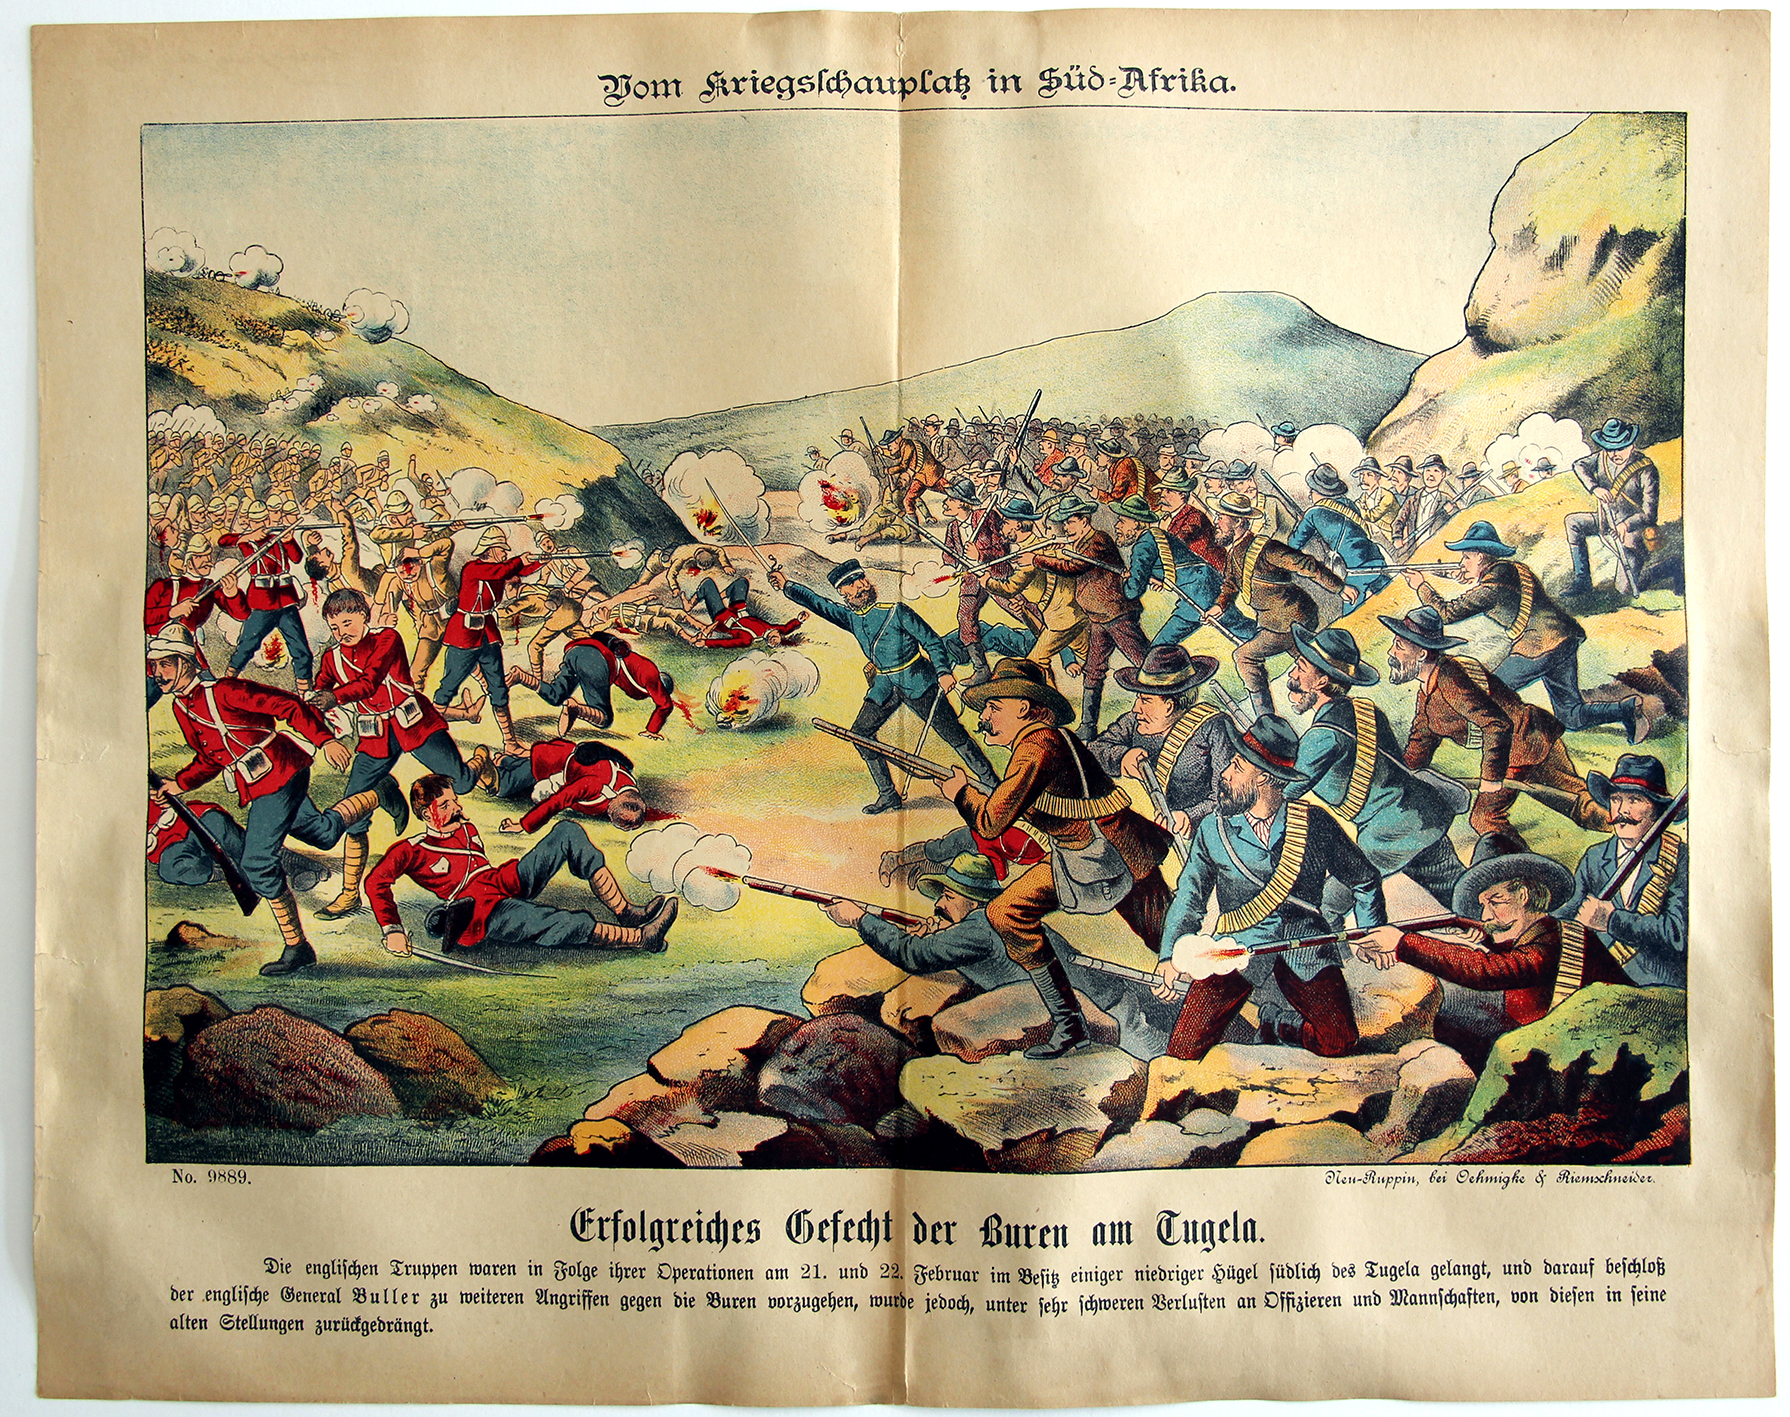 Planche imagerie - Neu-Ruppin, Bei Oehmigke & Riemschneider - Fin XIX - Guerre de Boers - Süd Afrika.